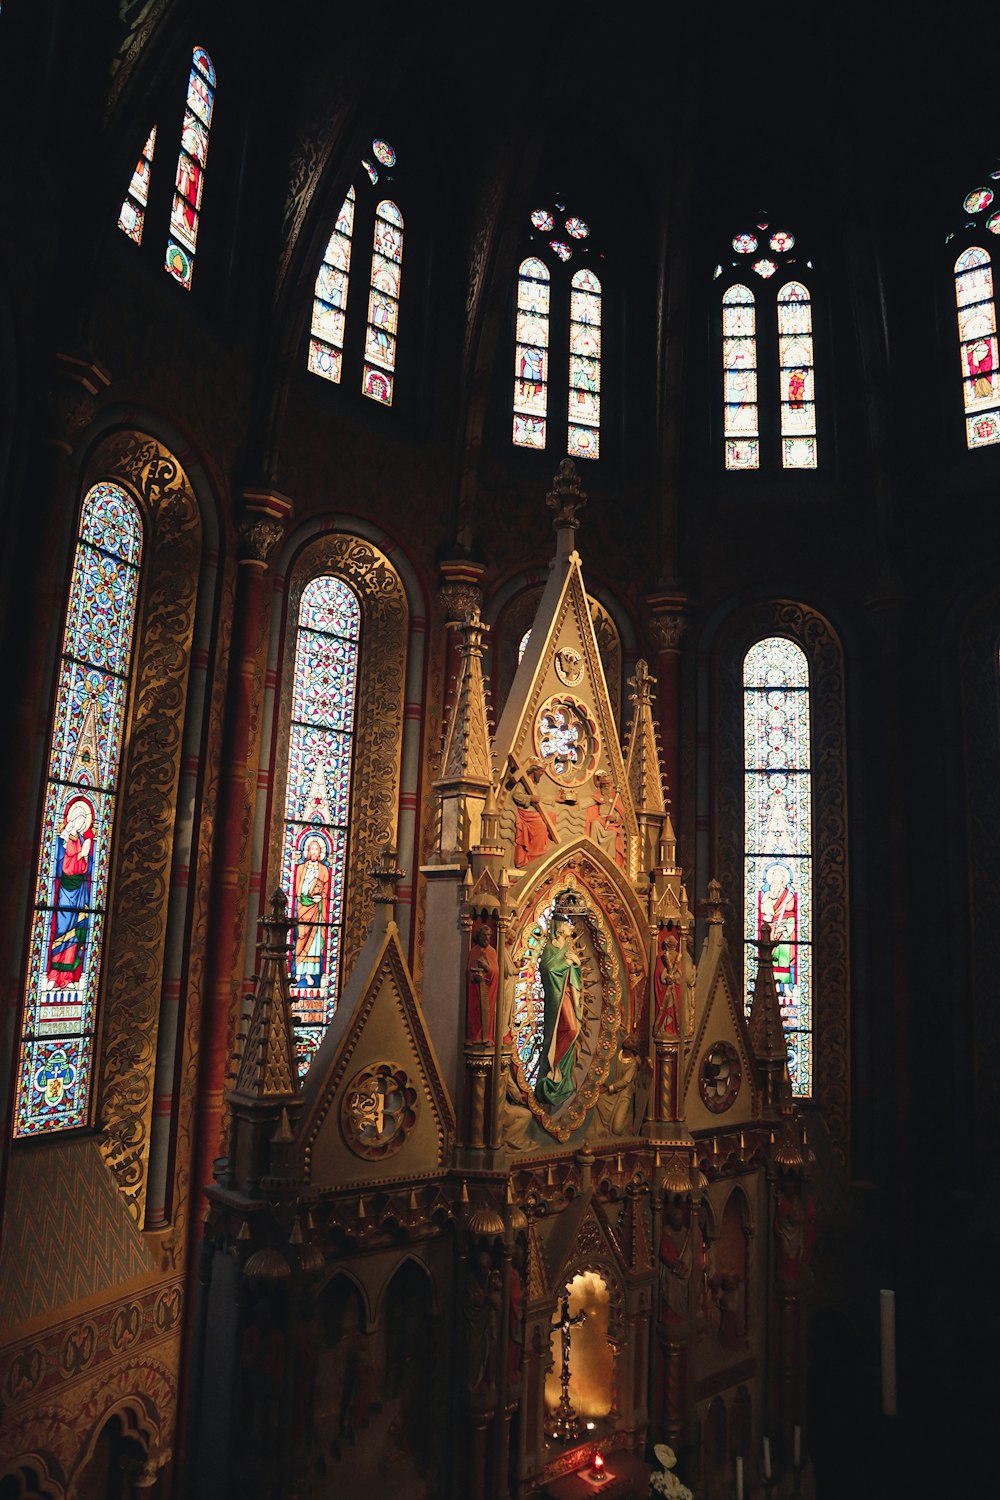 스테인드 글라스 창문과 금색 제단이 있는 교회